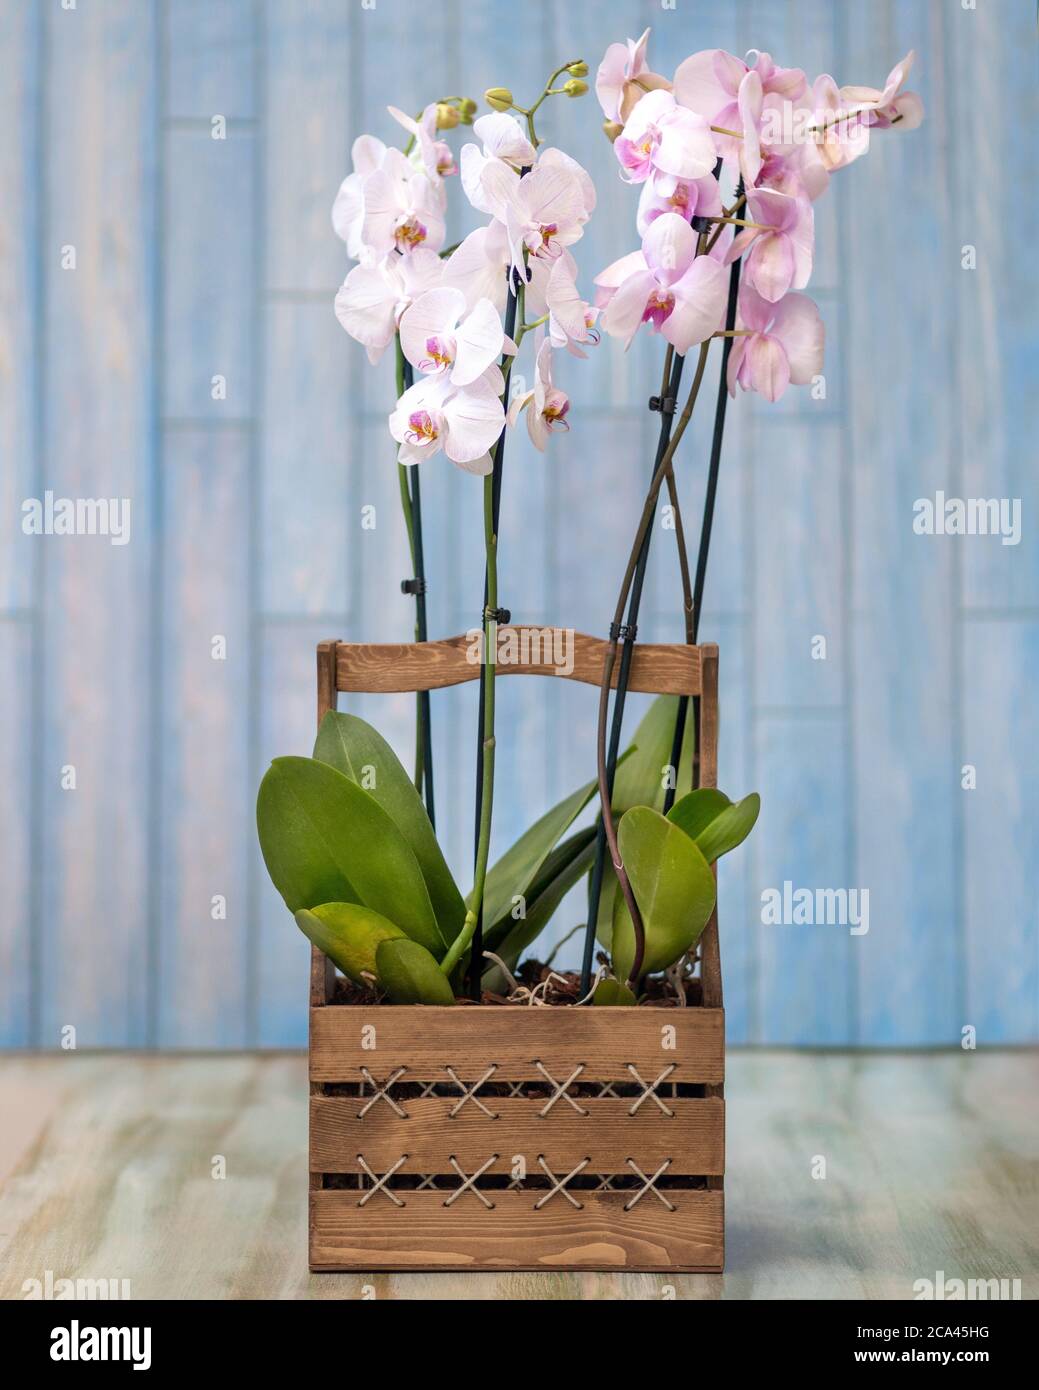 Phalaenopsist polilla orquídea en la caja de madera Fotografía de stock -  Alamy